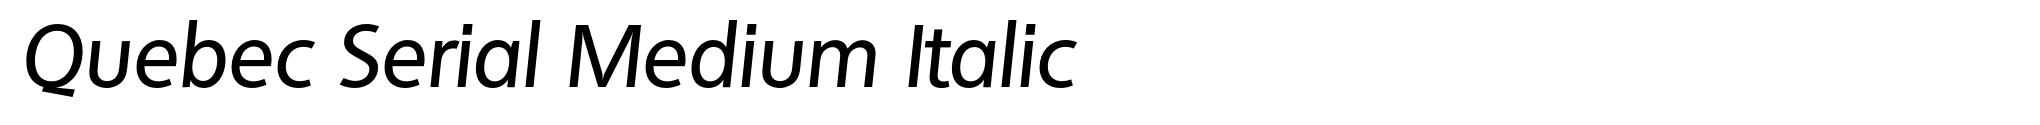 Quebec Serial Medium Italic image